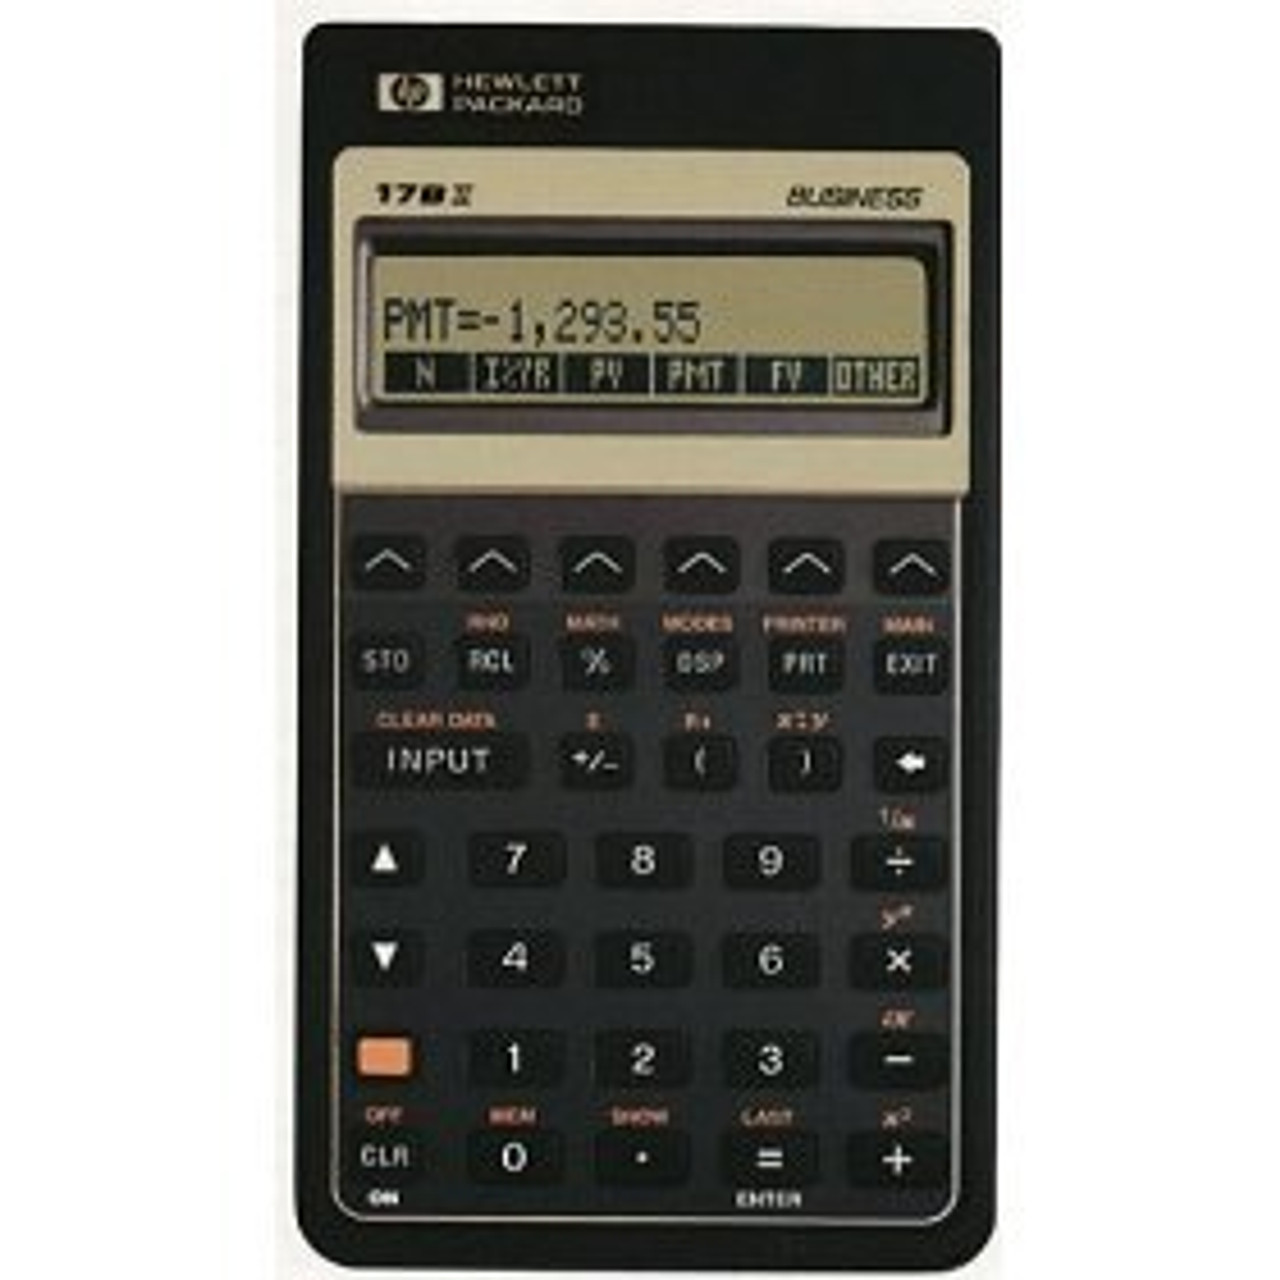 financial calculators